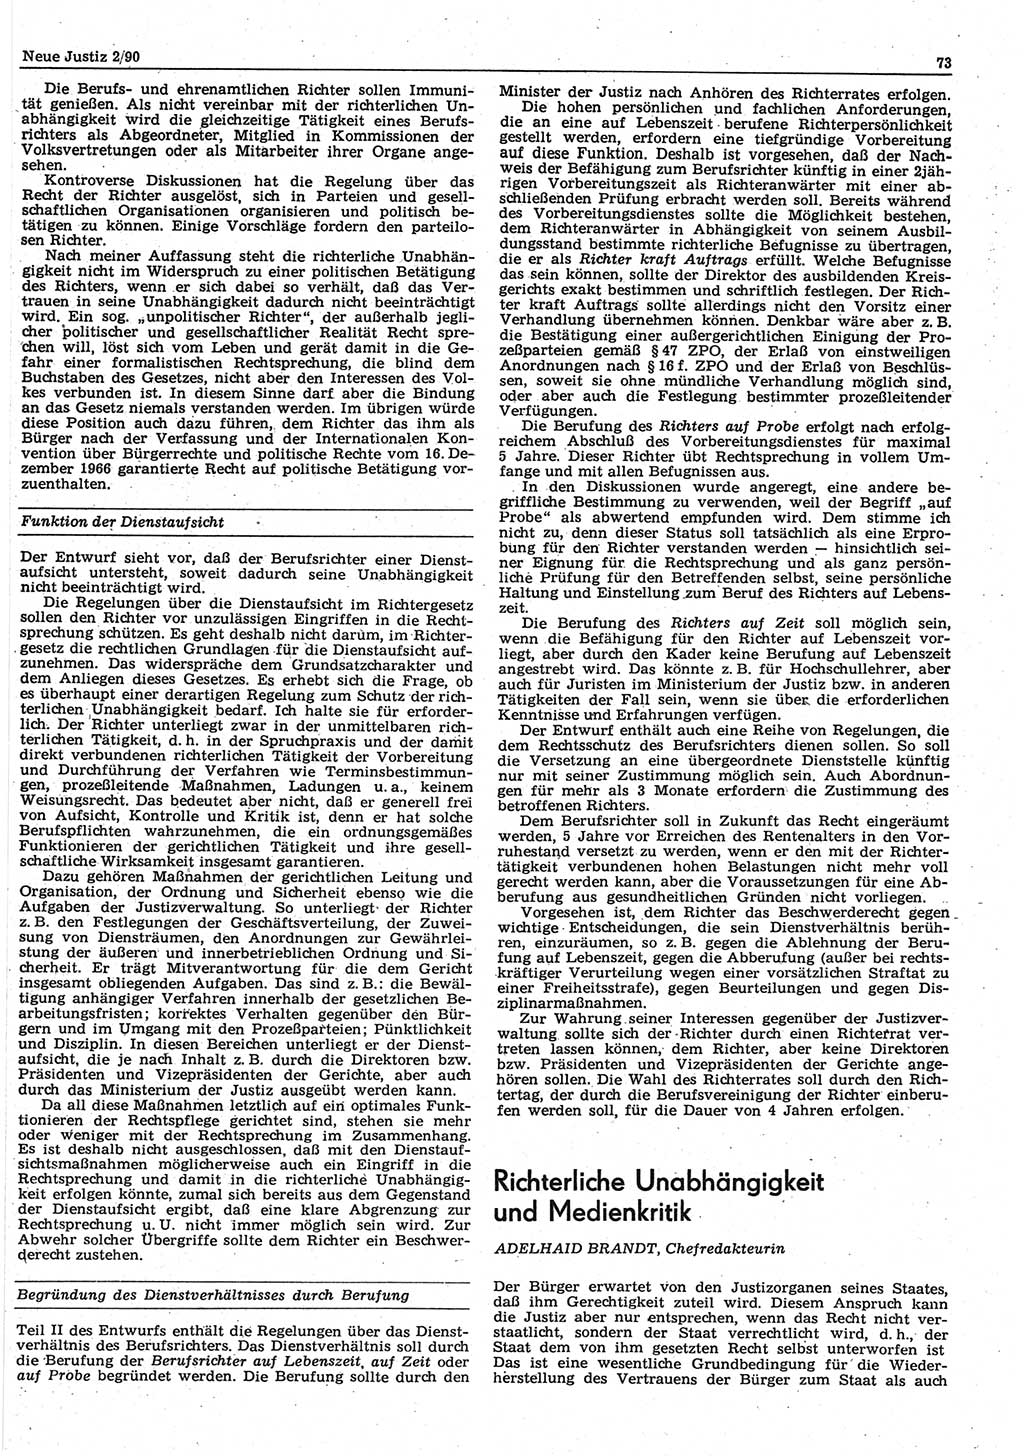 Neue Justiz (NJ), Zeitschrift für Rechtsetzung und Rechtsanwendung [Deutsche Demokratische Republik (DDR)], 44. Jahrgang 1990, Seite 73 (NJ DDR 1990, S. 73)